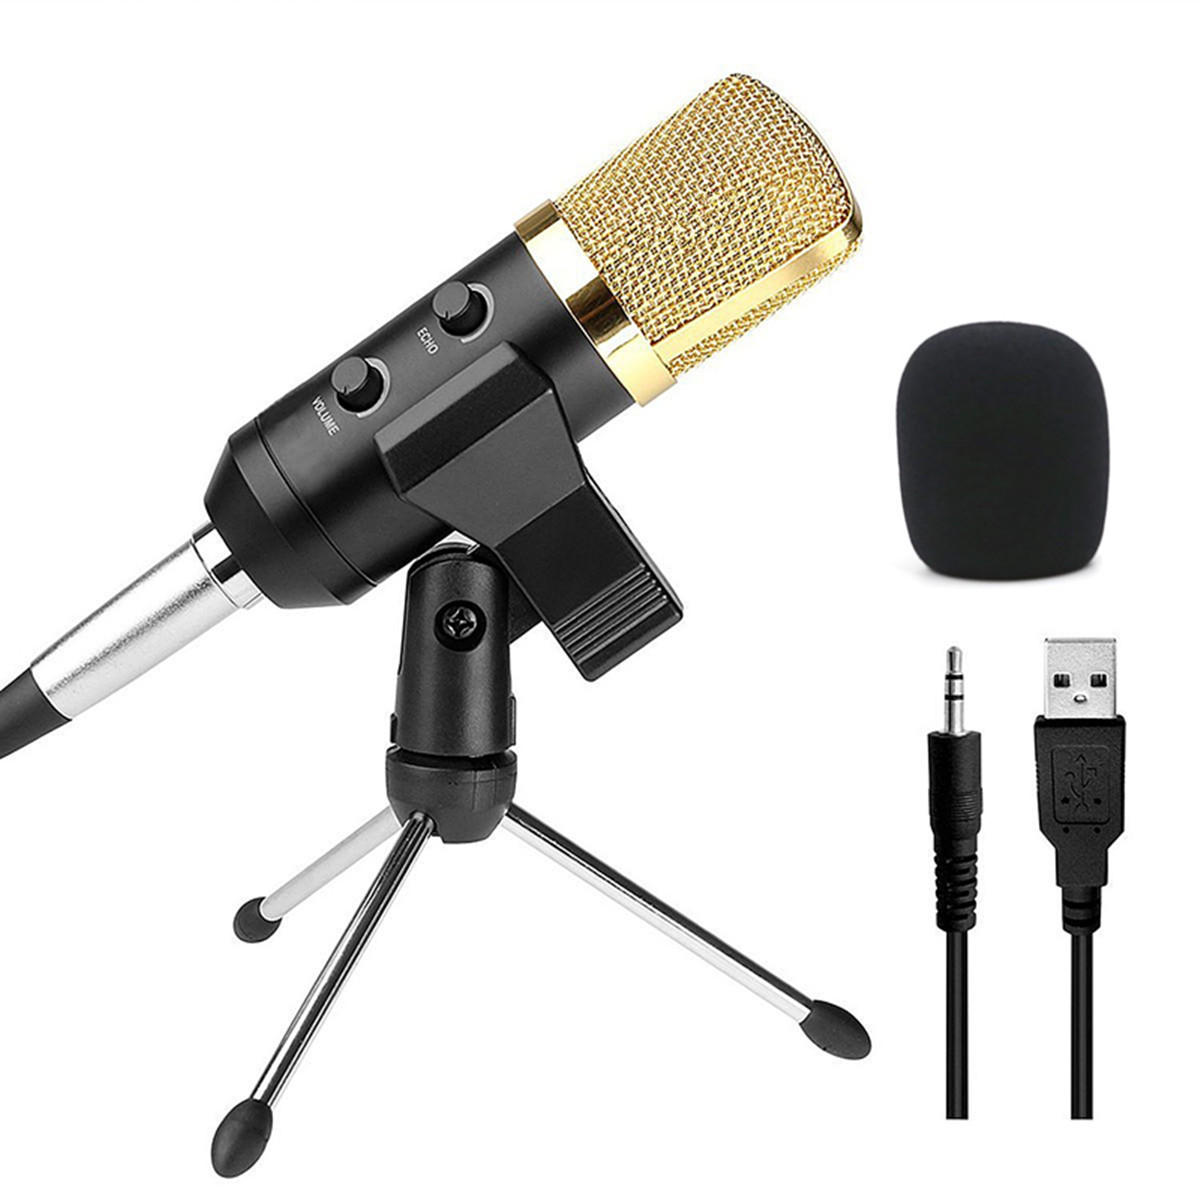 Audio Condensador USB dinámico Grabación de sonido Vocal Micrófono Mic con soporte de montaje